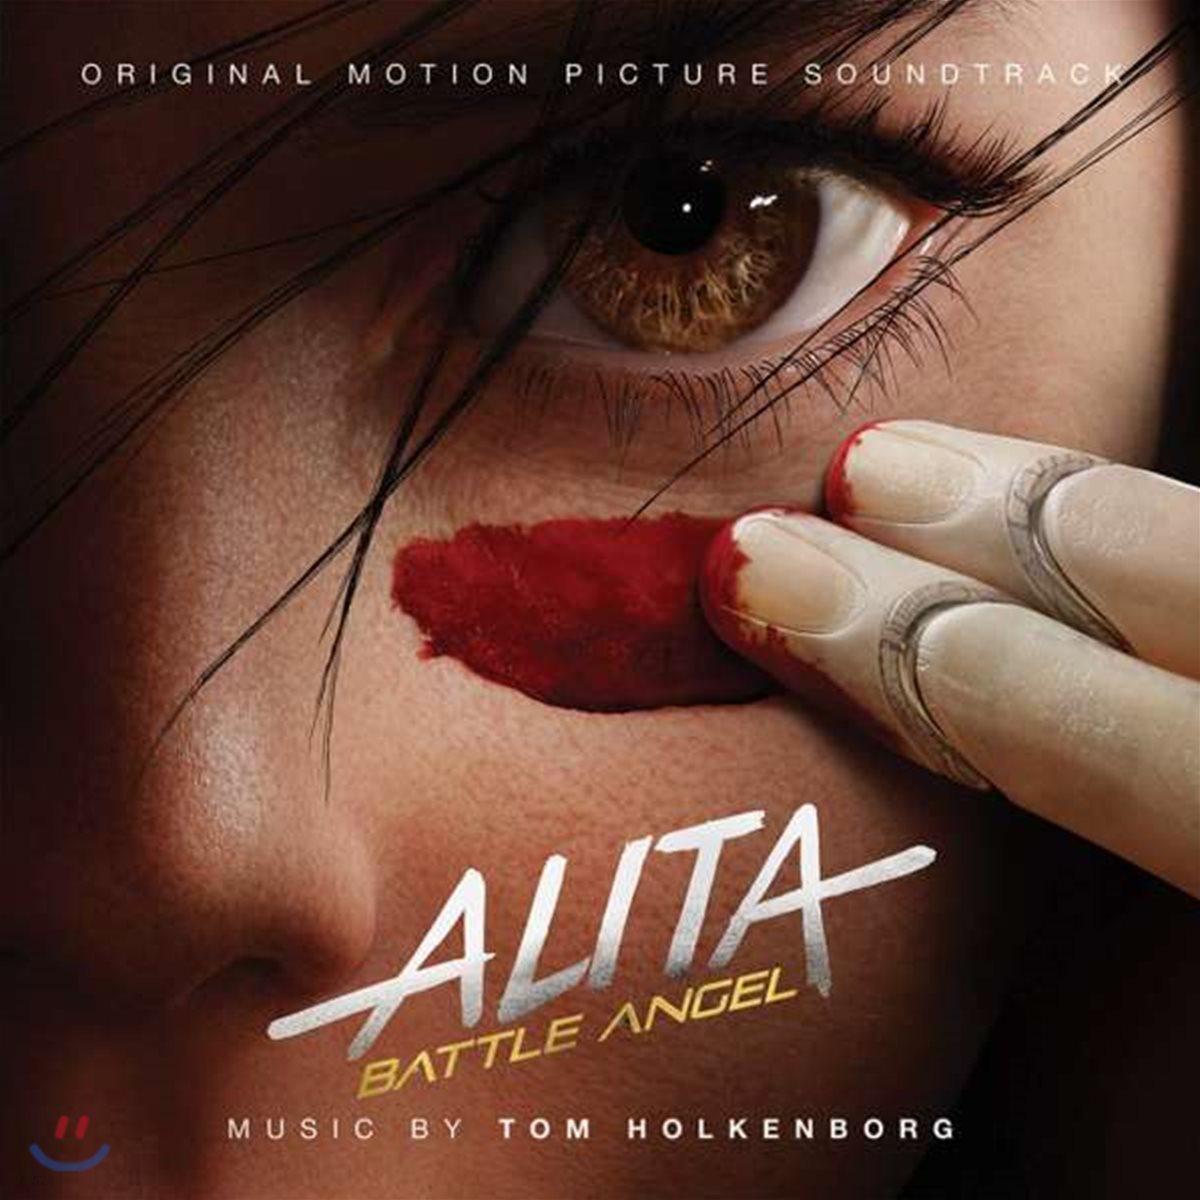 알리타: 배틀 엔젤 영화음악 (Alita: Battle Angel OST by Tom Holkenborg) [LP]